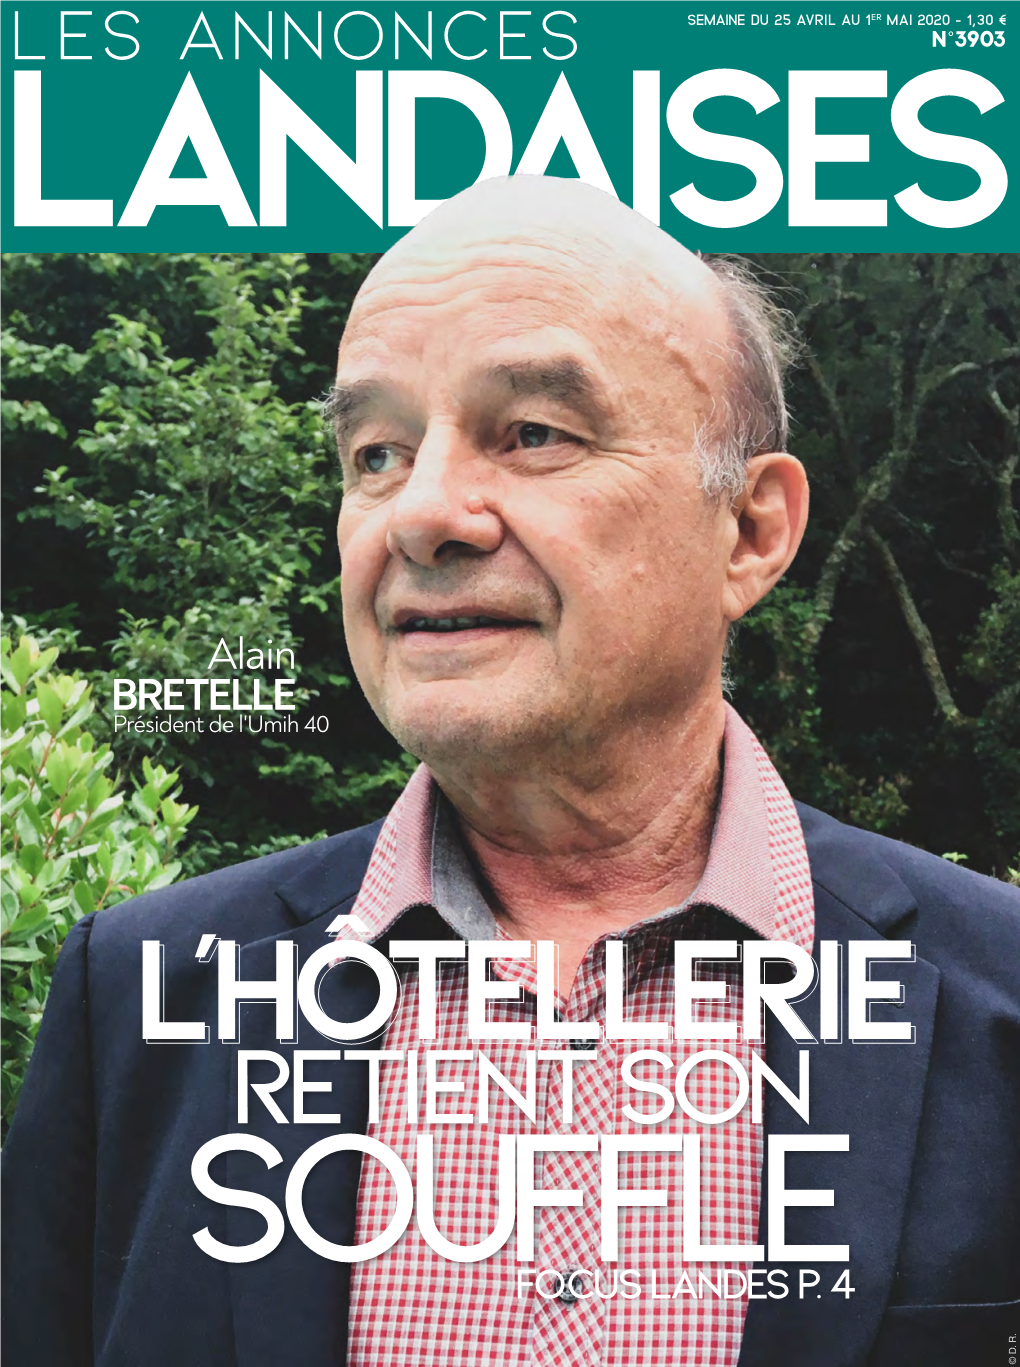 Les Annonces Landaises-3903-Semaine Du 25 Avril Au 1Er Mai 2020 © D